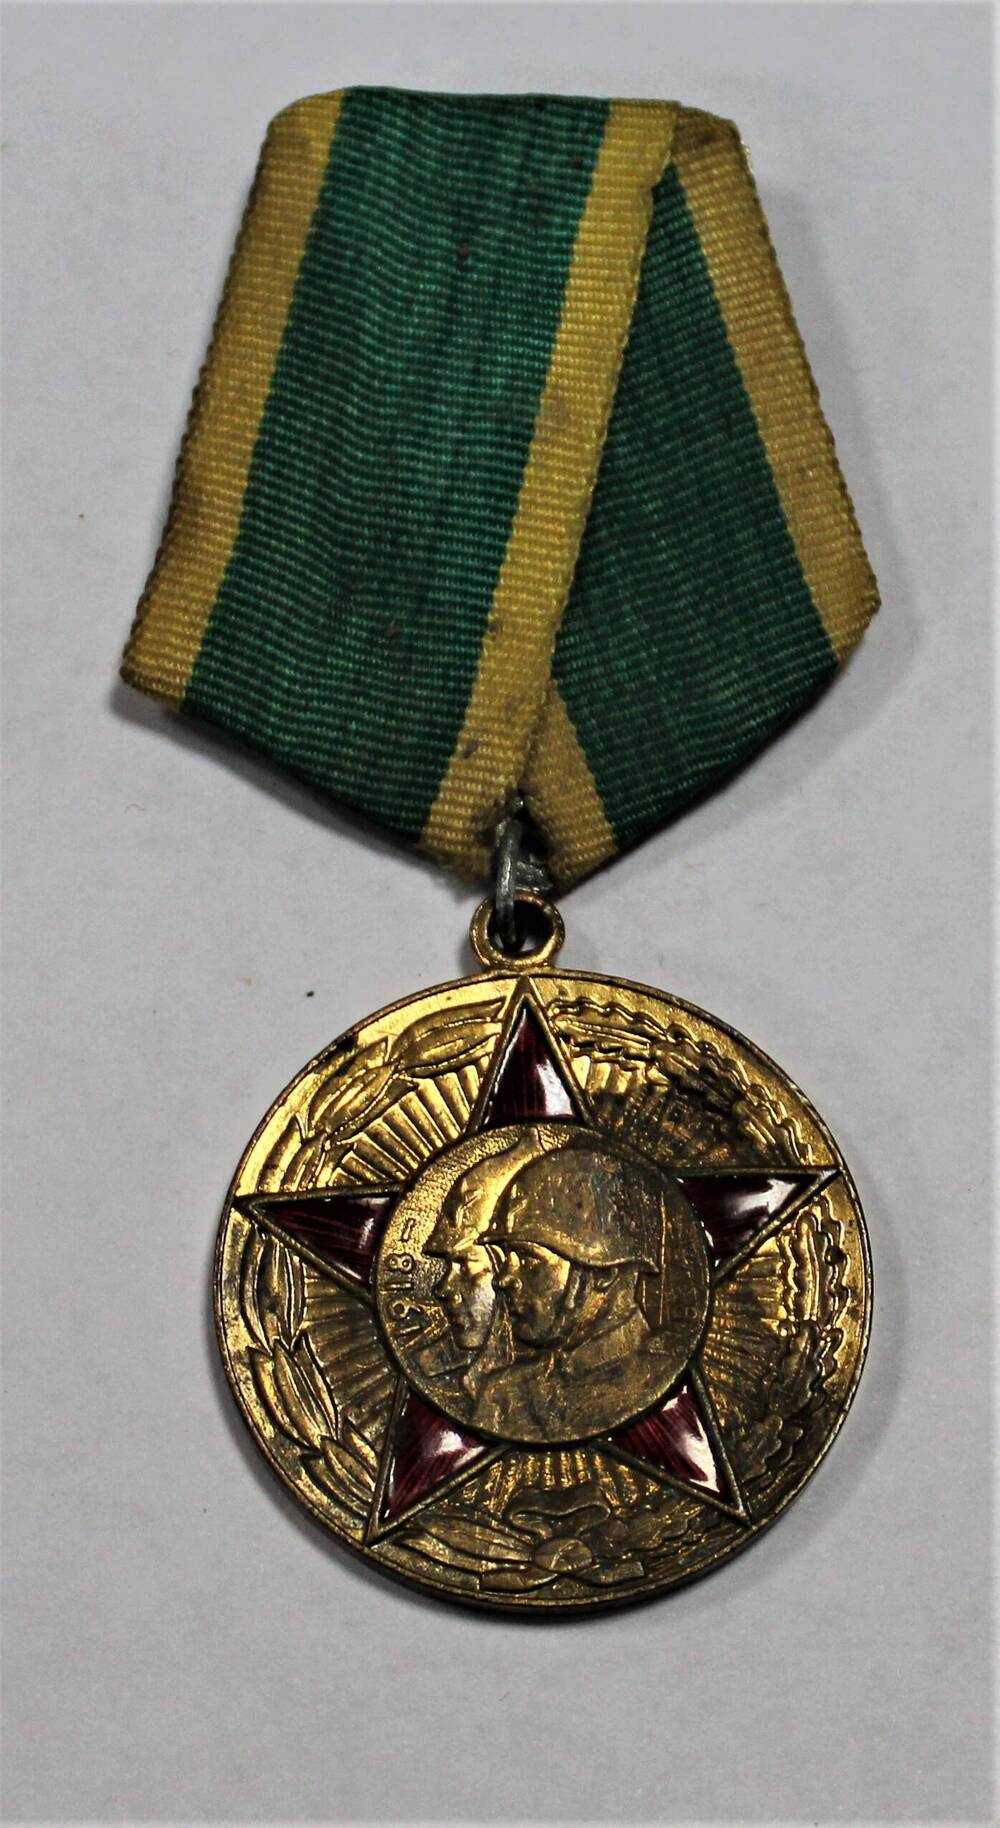 Медаль 50 лет Вооруженных Сил СССР Титова Михаила Николаевича - ветерана Великой Отечественной войны 1941-1945 гг.